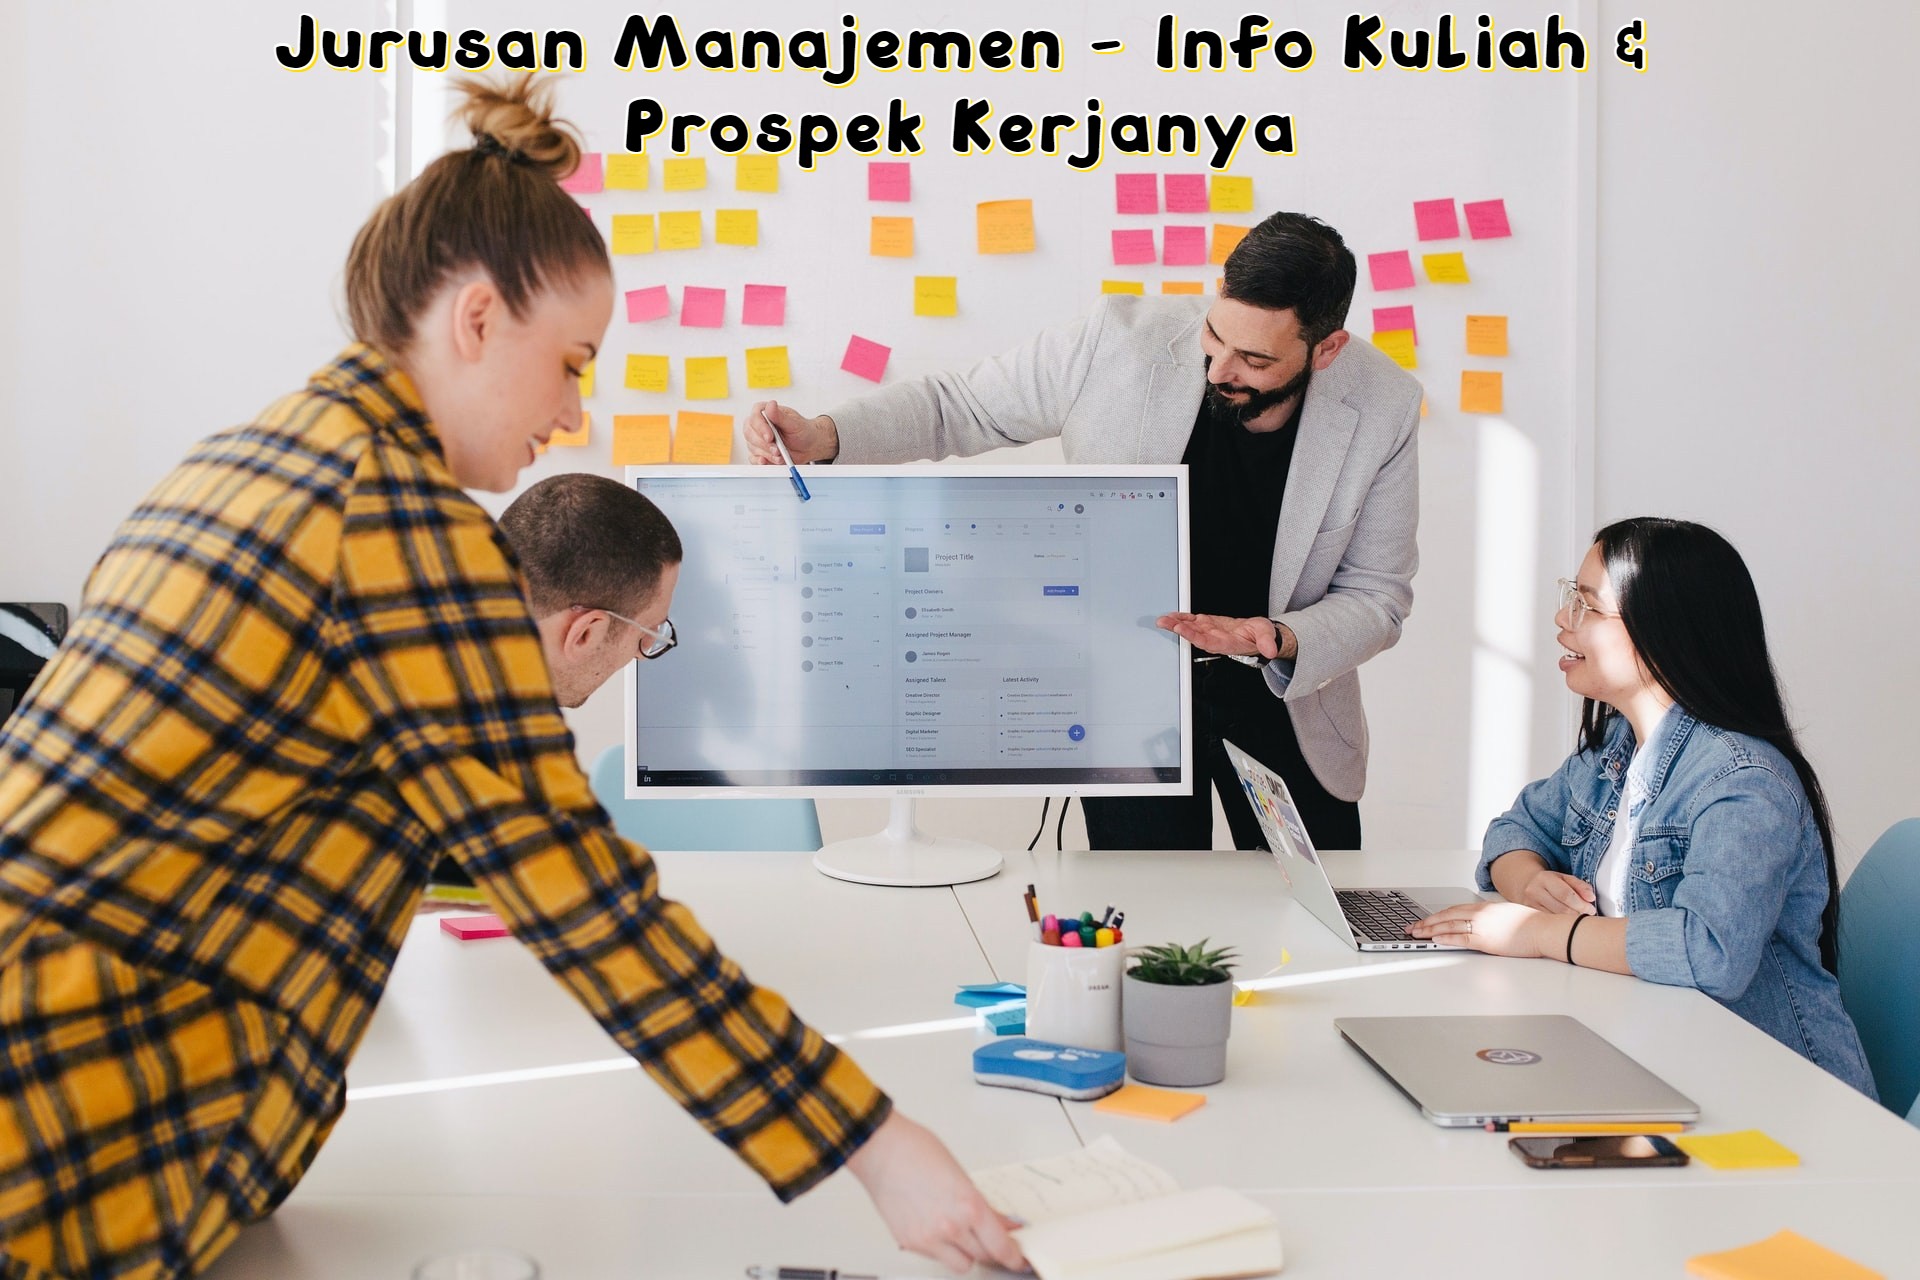 Jurusan Manajemen - Info Kuliah & Prospek Kerjanya